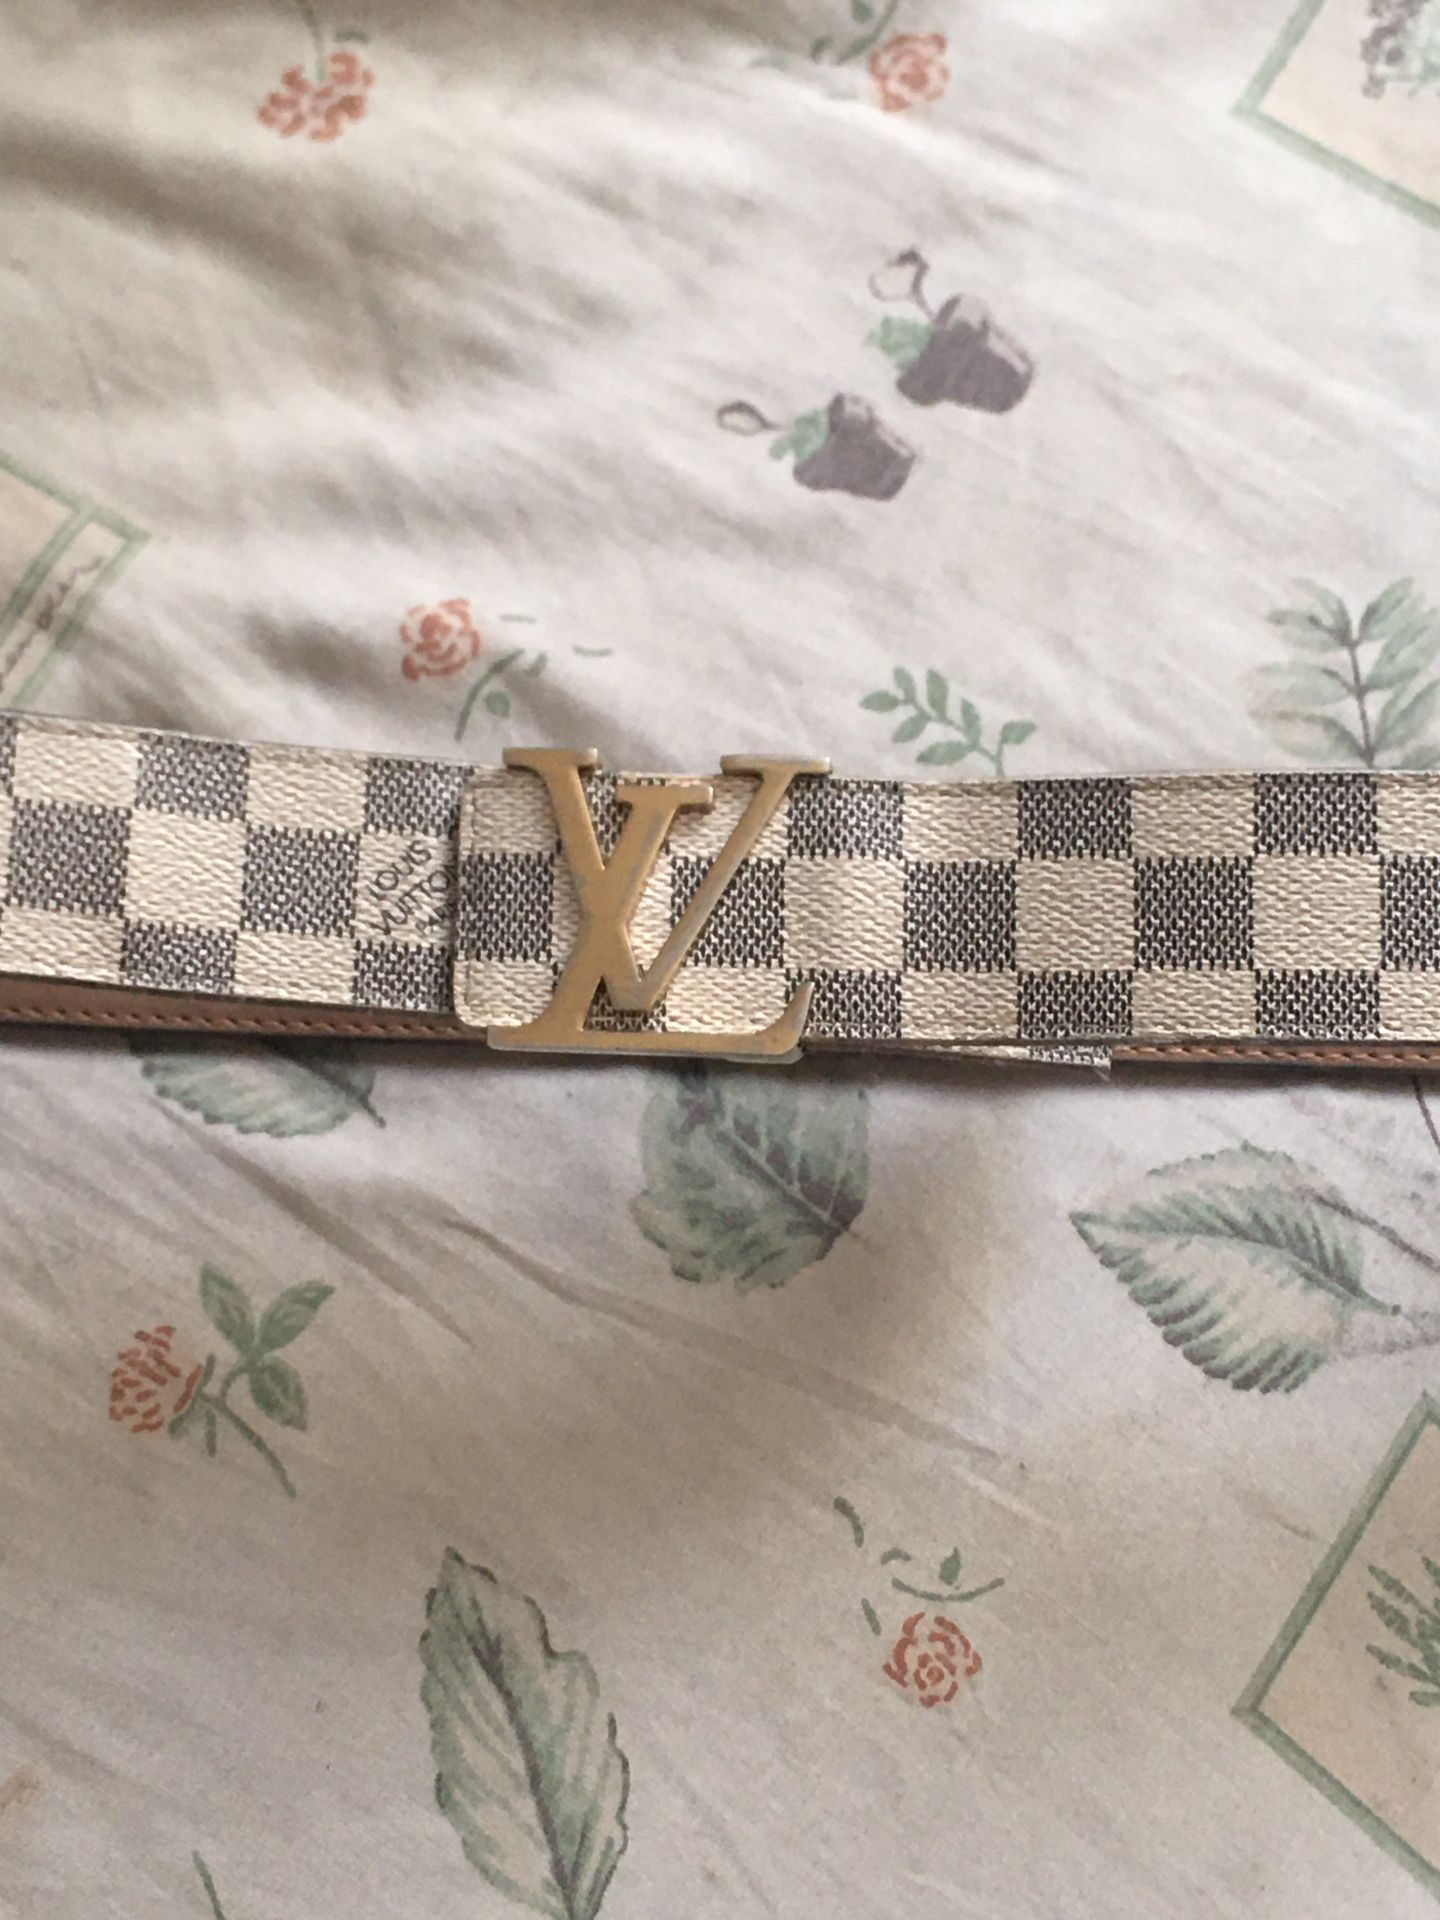 Louis Vuitton belt 35" waist